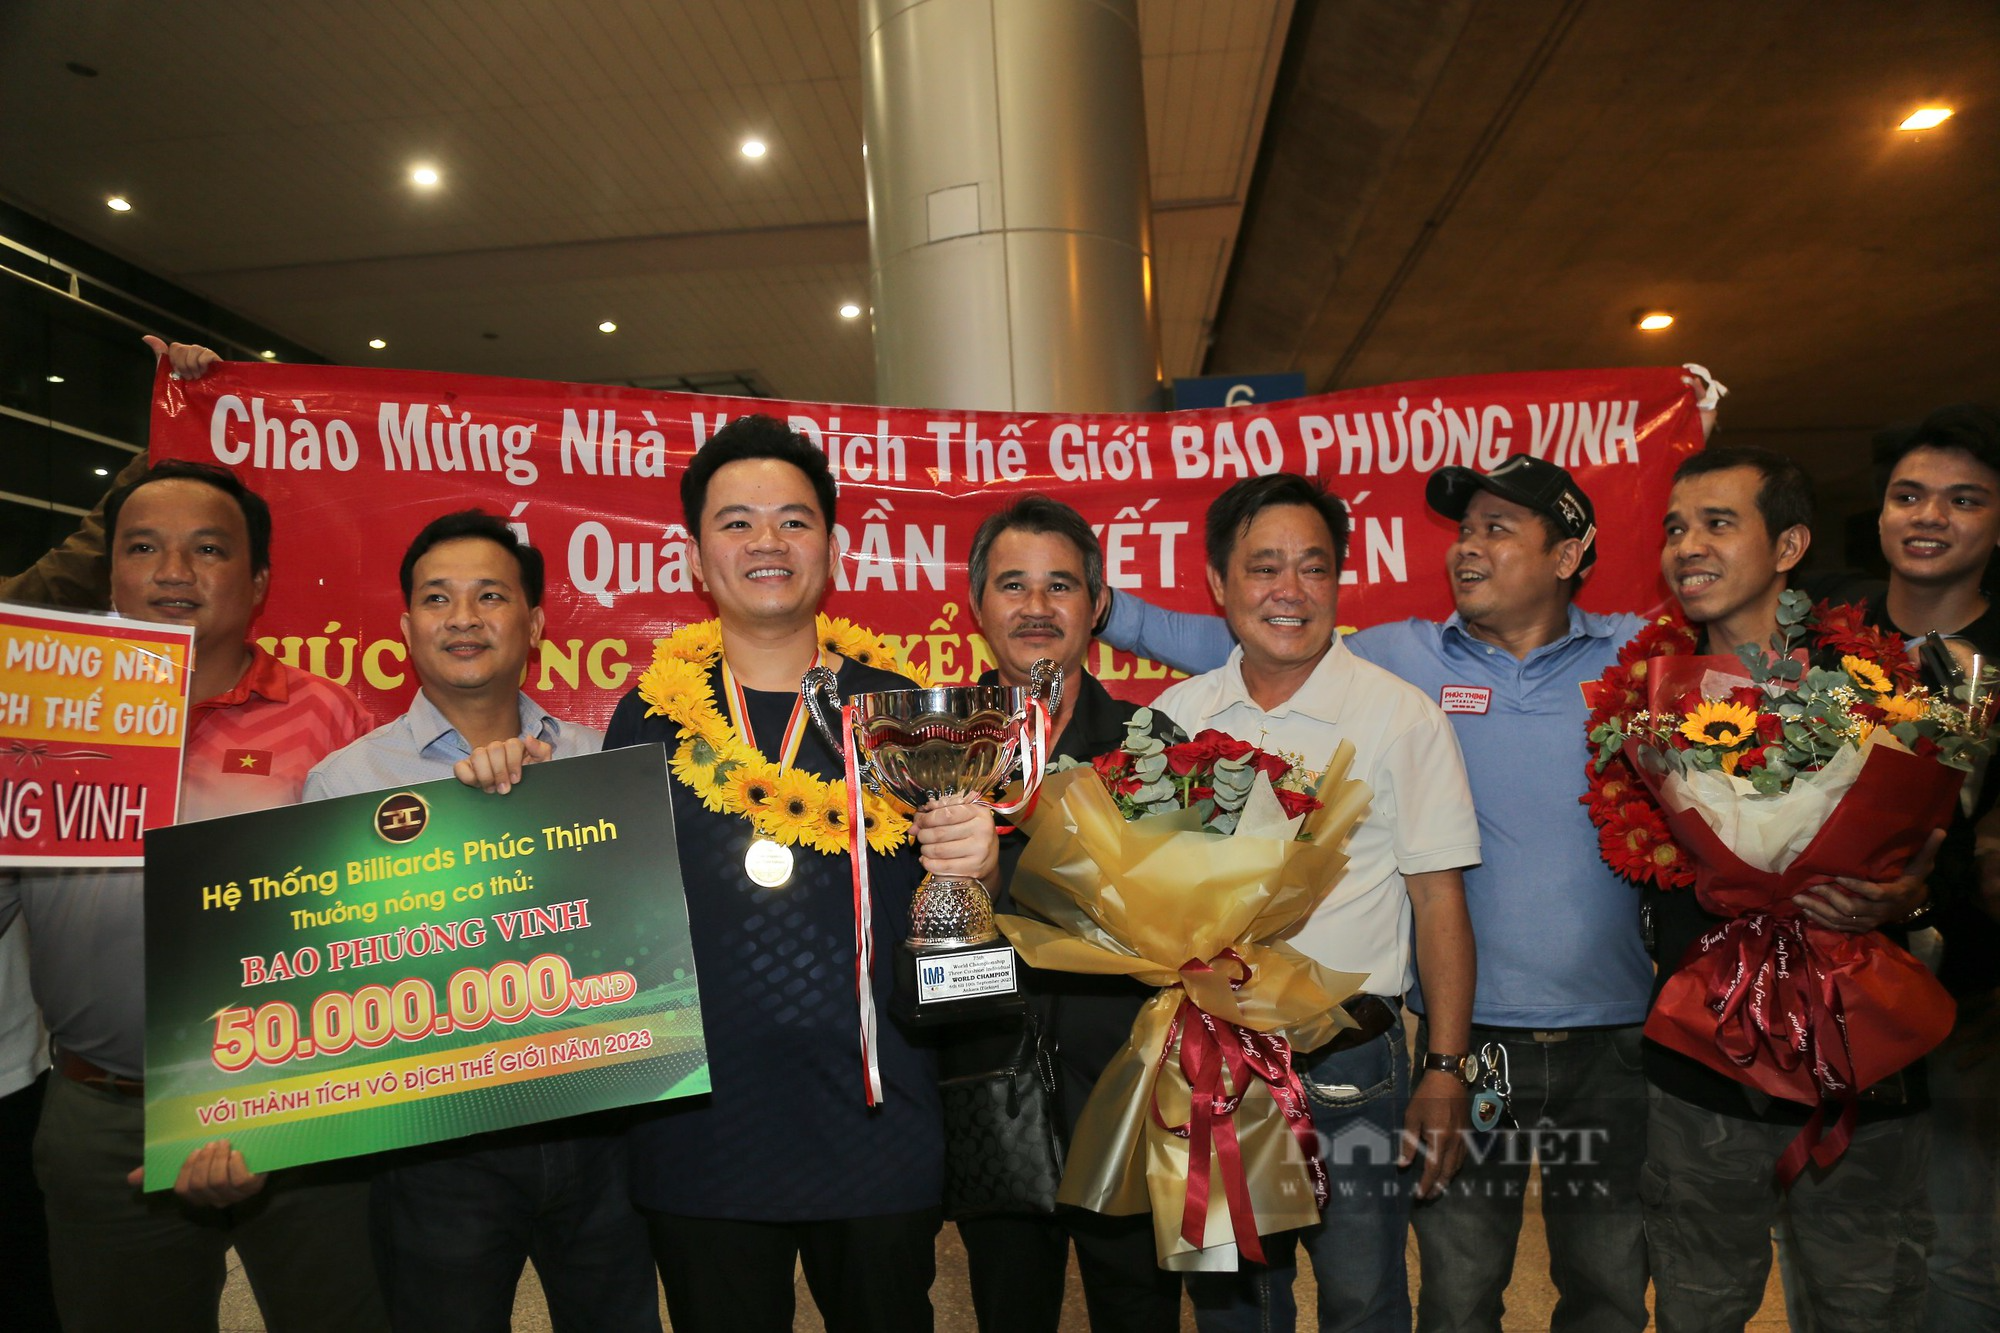 Vừa vô địch thế giới, Bao Phương Vinh đặt mục tiêu lên ngôi tại World Cup biliards 3 băng - Ảnh 3.